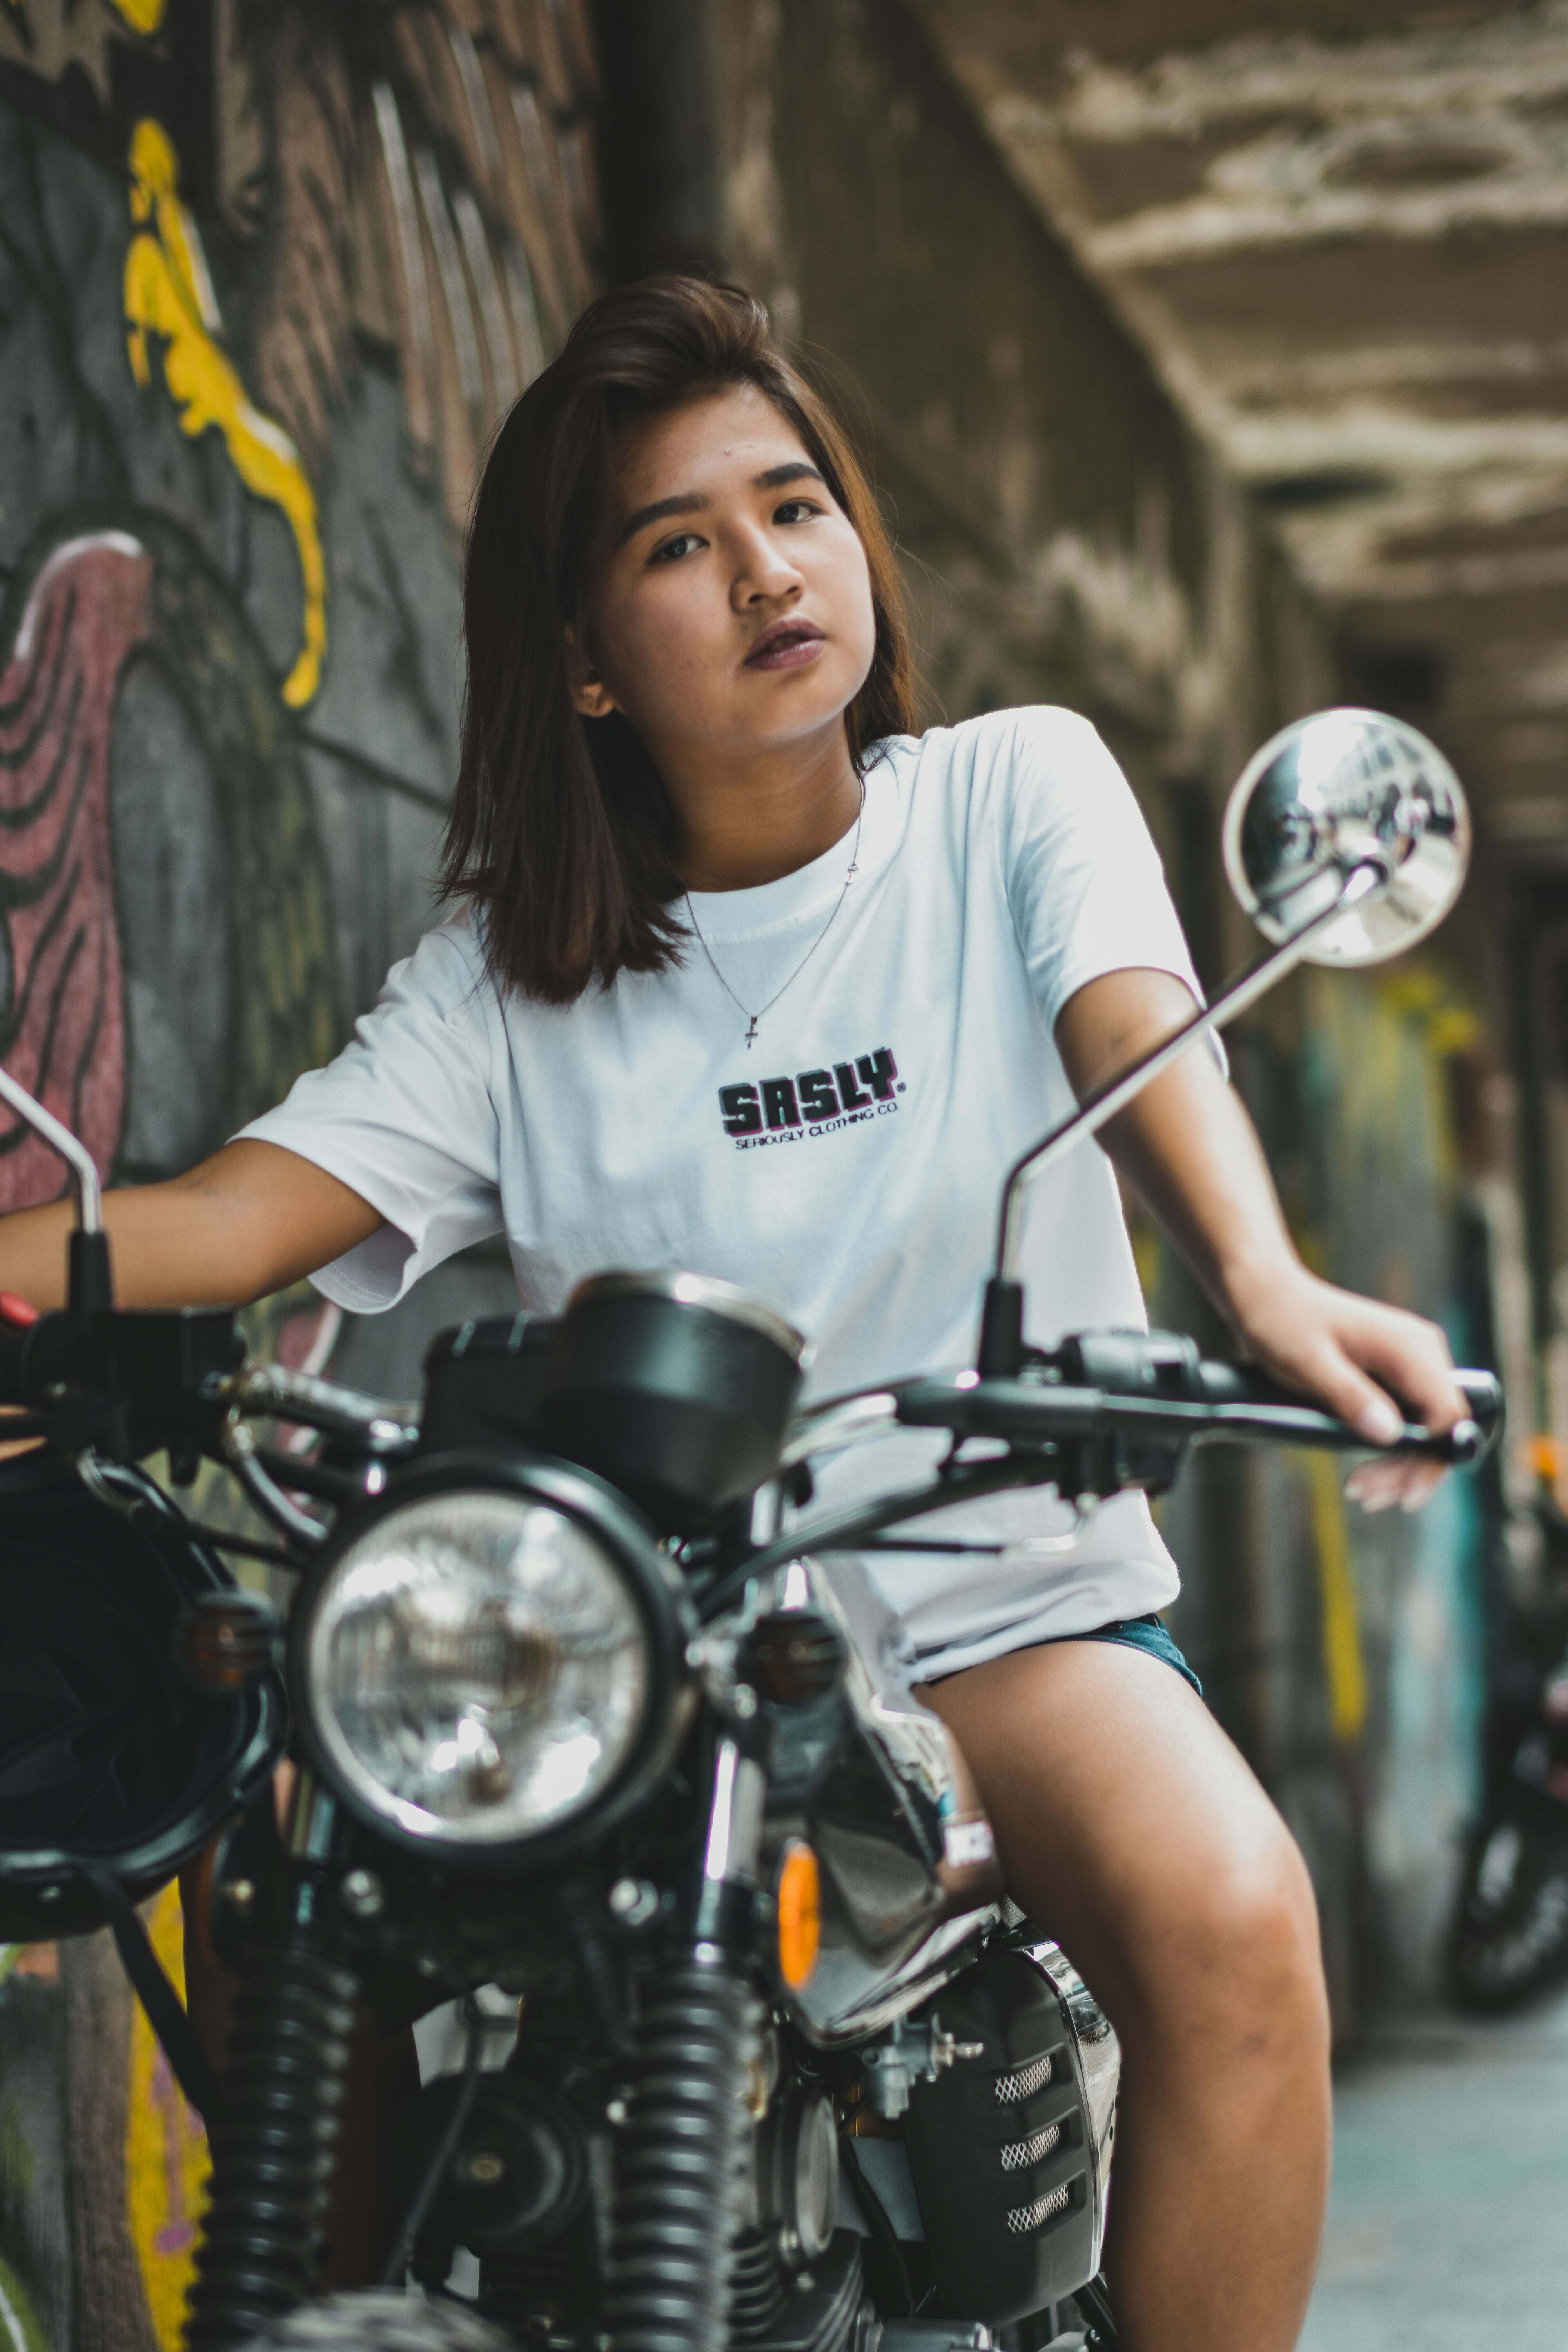 woman riding on motorcycle beside graffiti wall